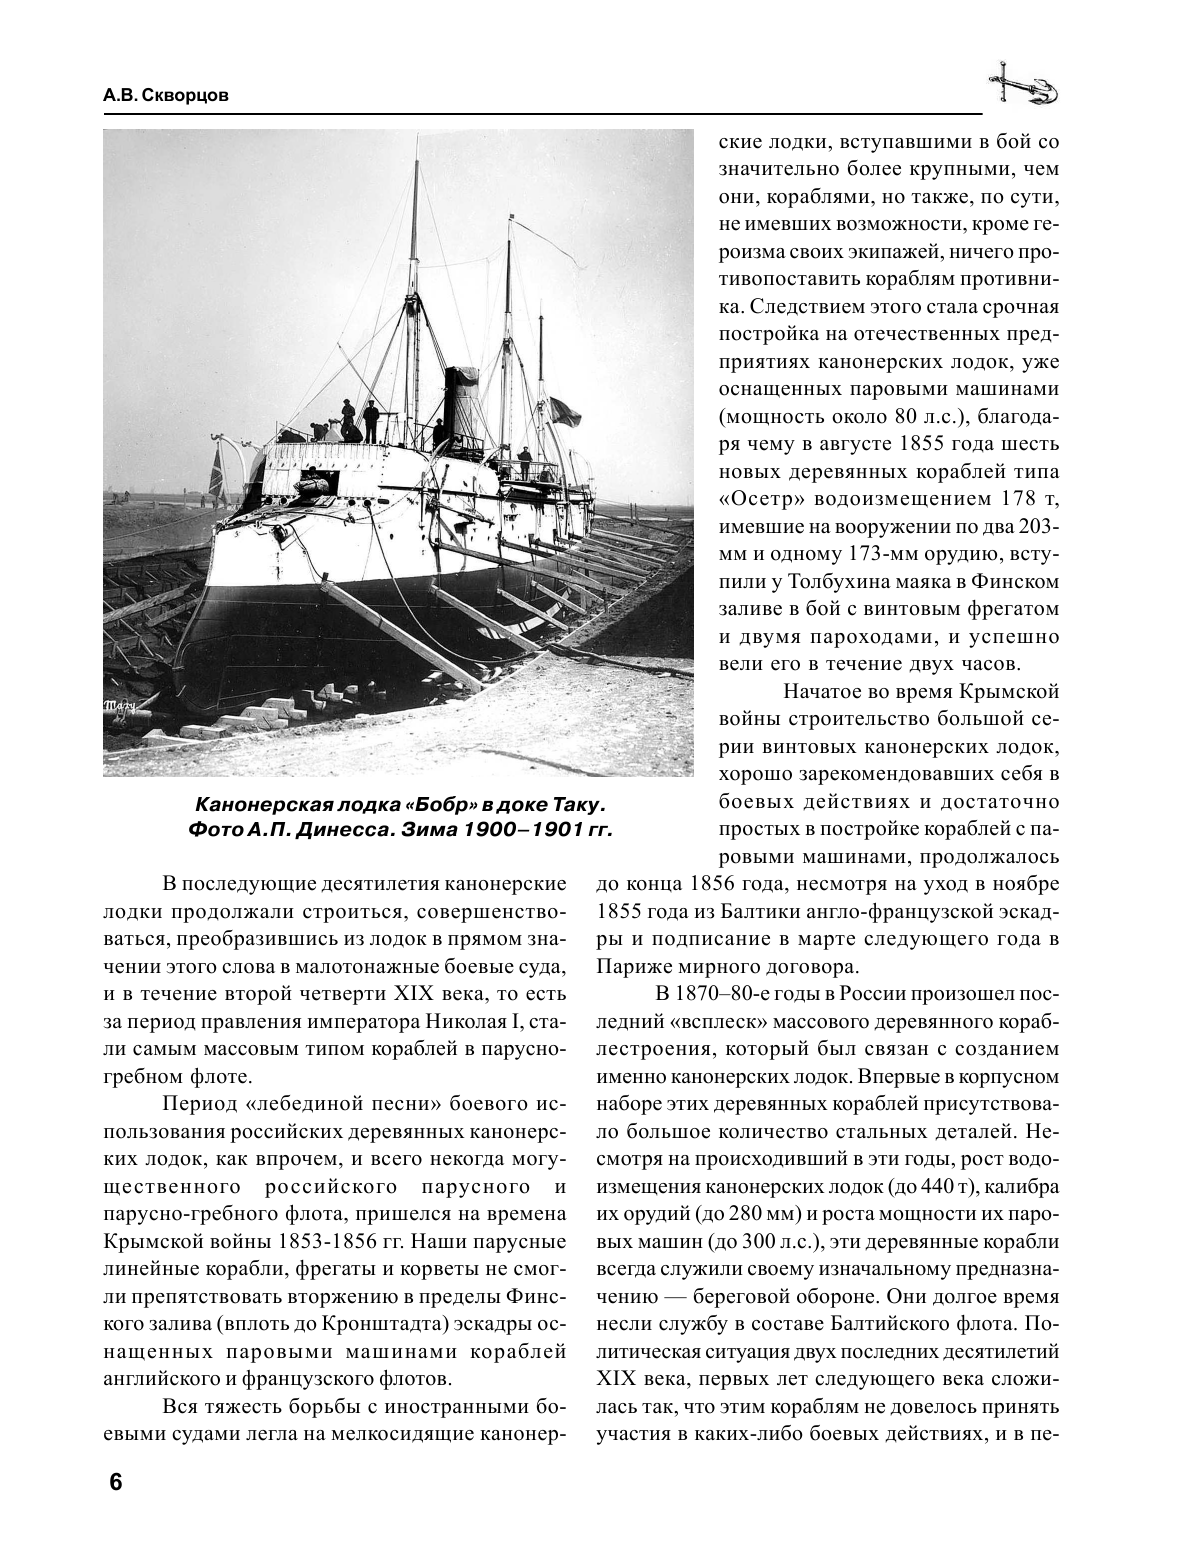 Канонерские лодки типа «Гиляк». От Китая и Порт-Артура до Первой мировой - фото №7